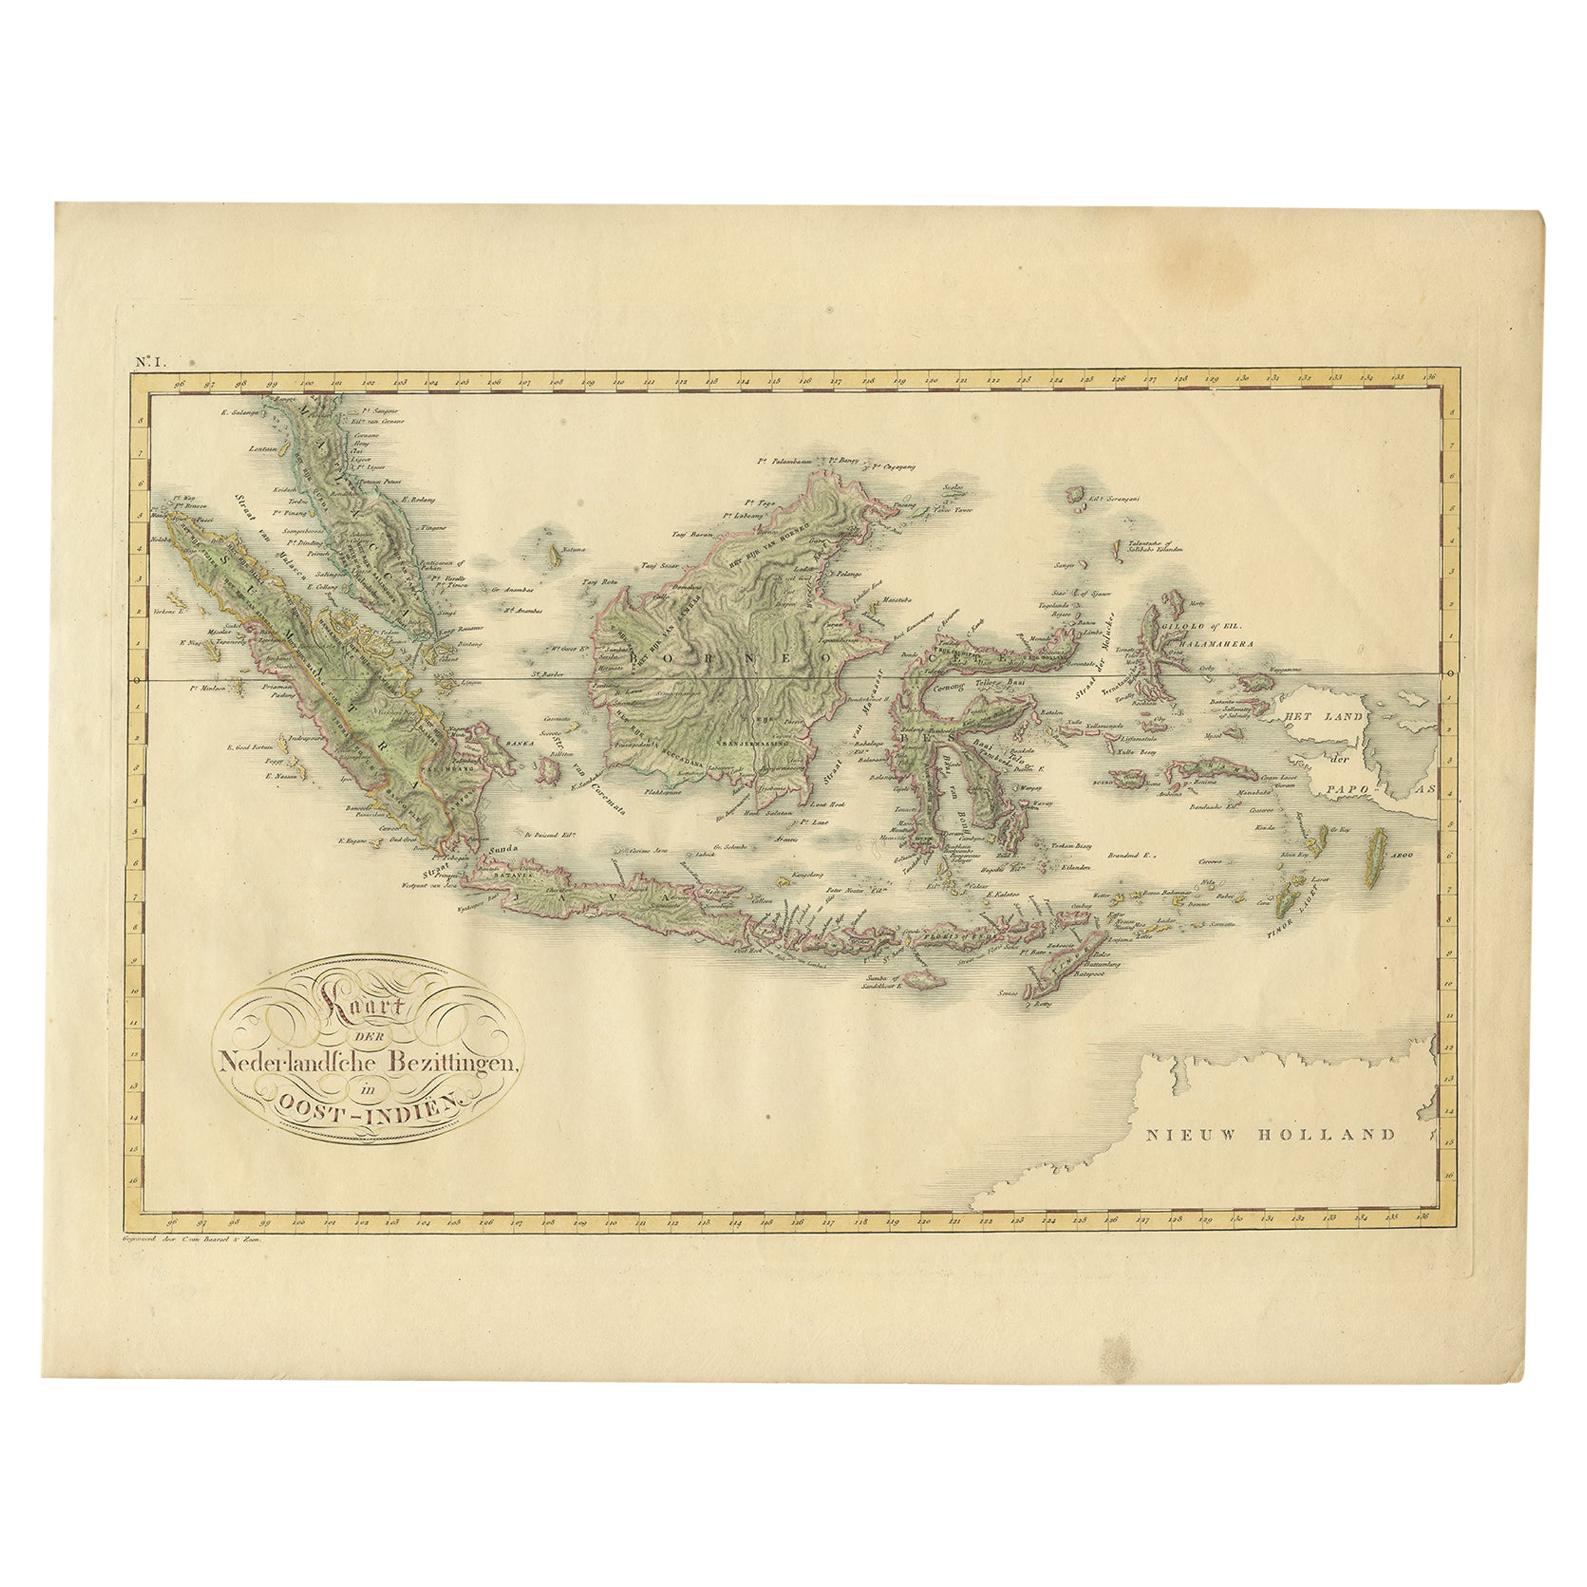 Carte ancienne des Indes orientales néerlandaises par Van den Bosch '1818'